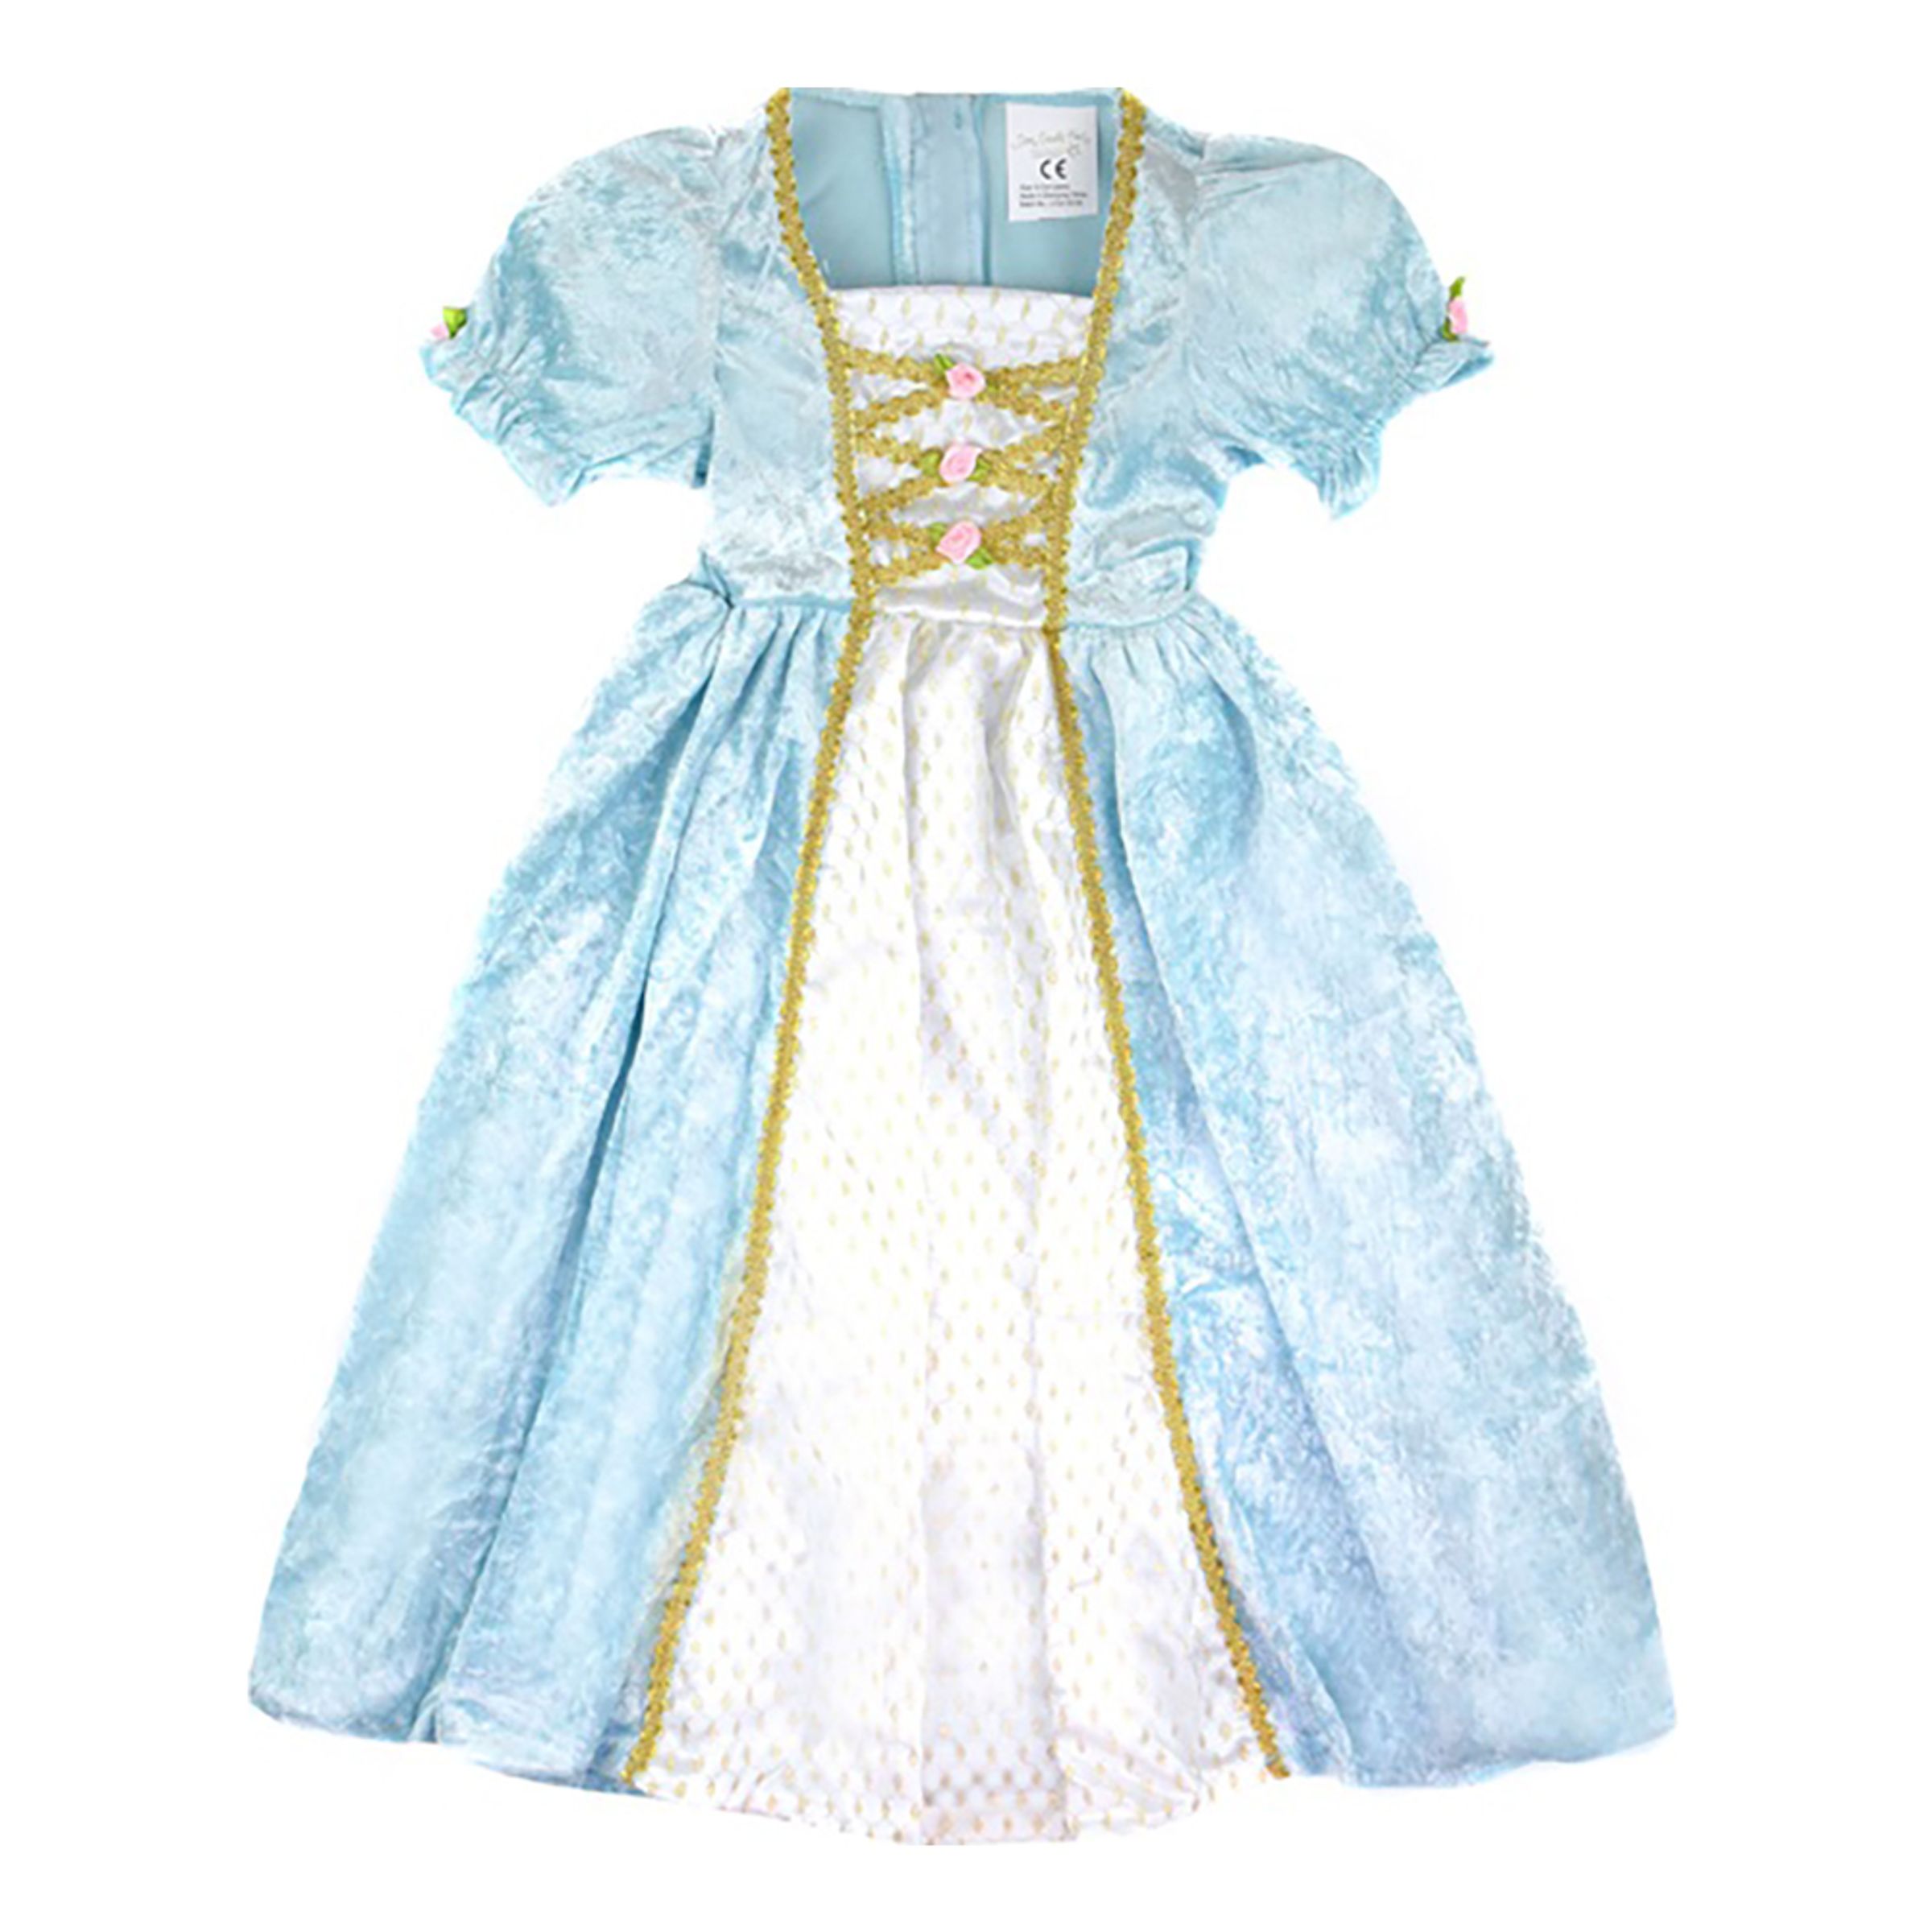 Prinsessklänning Sammetsturkos Barn - Large